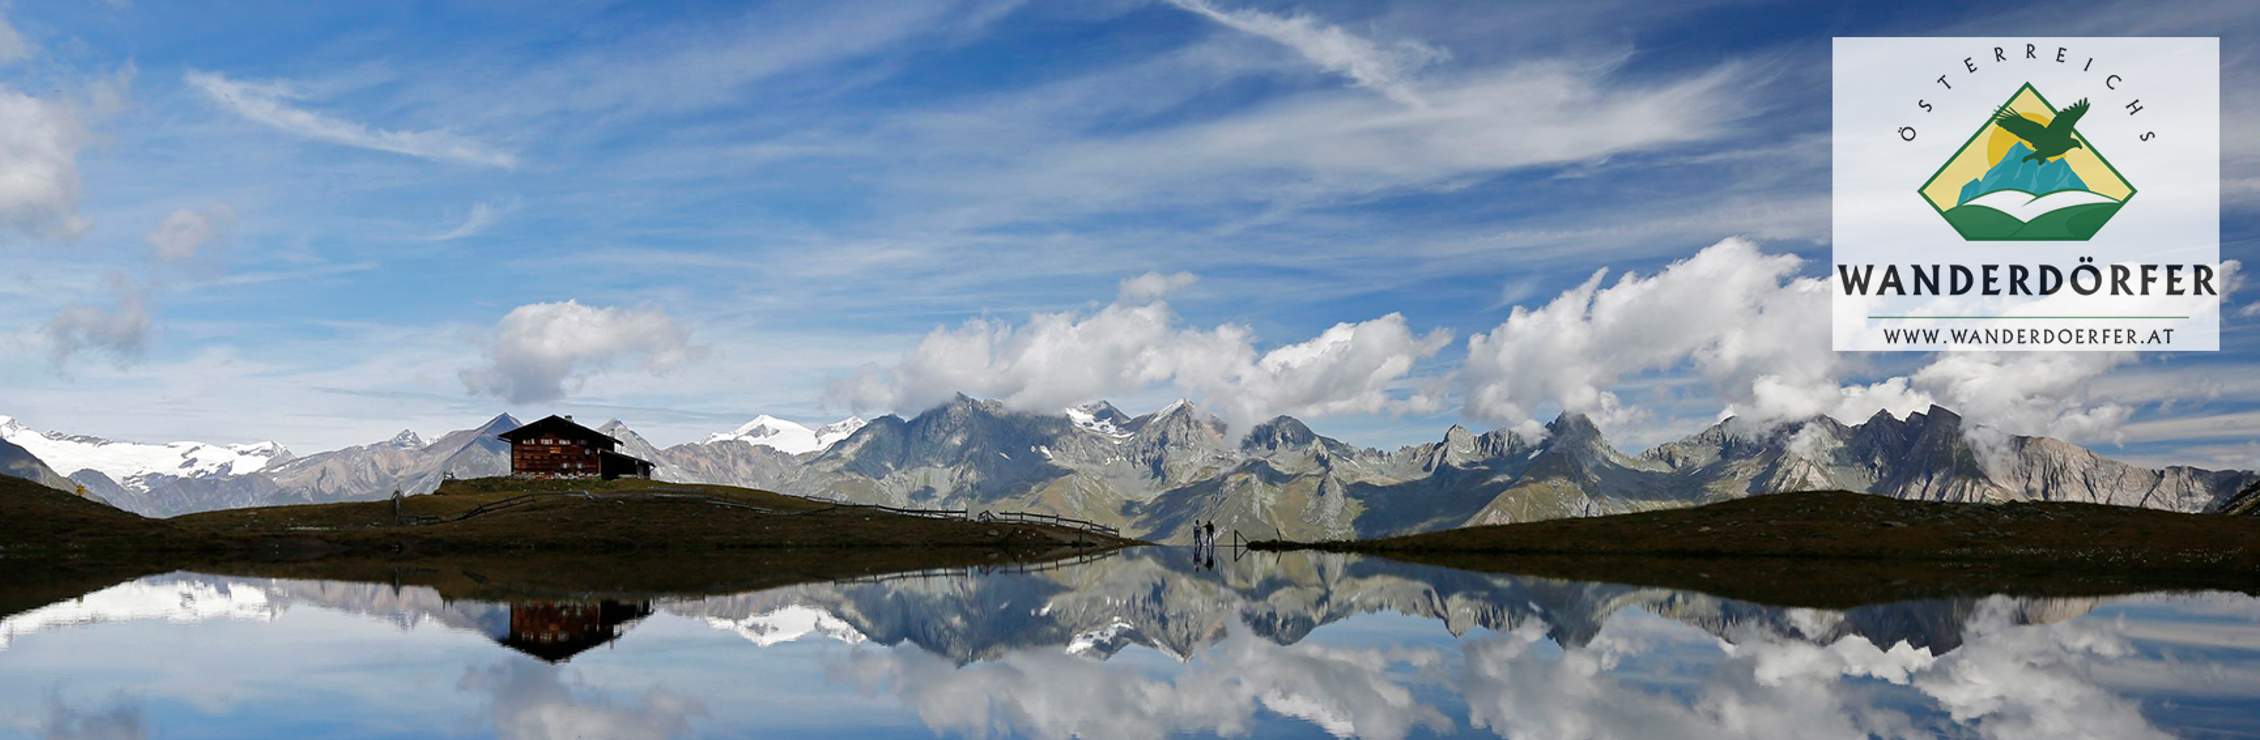 Österreichs Wanderdörfer: Tirol, Kärnten & Niederösterreich 